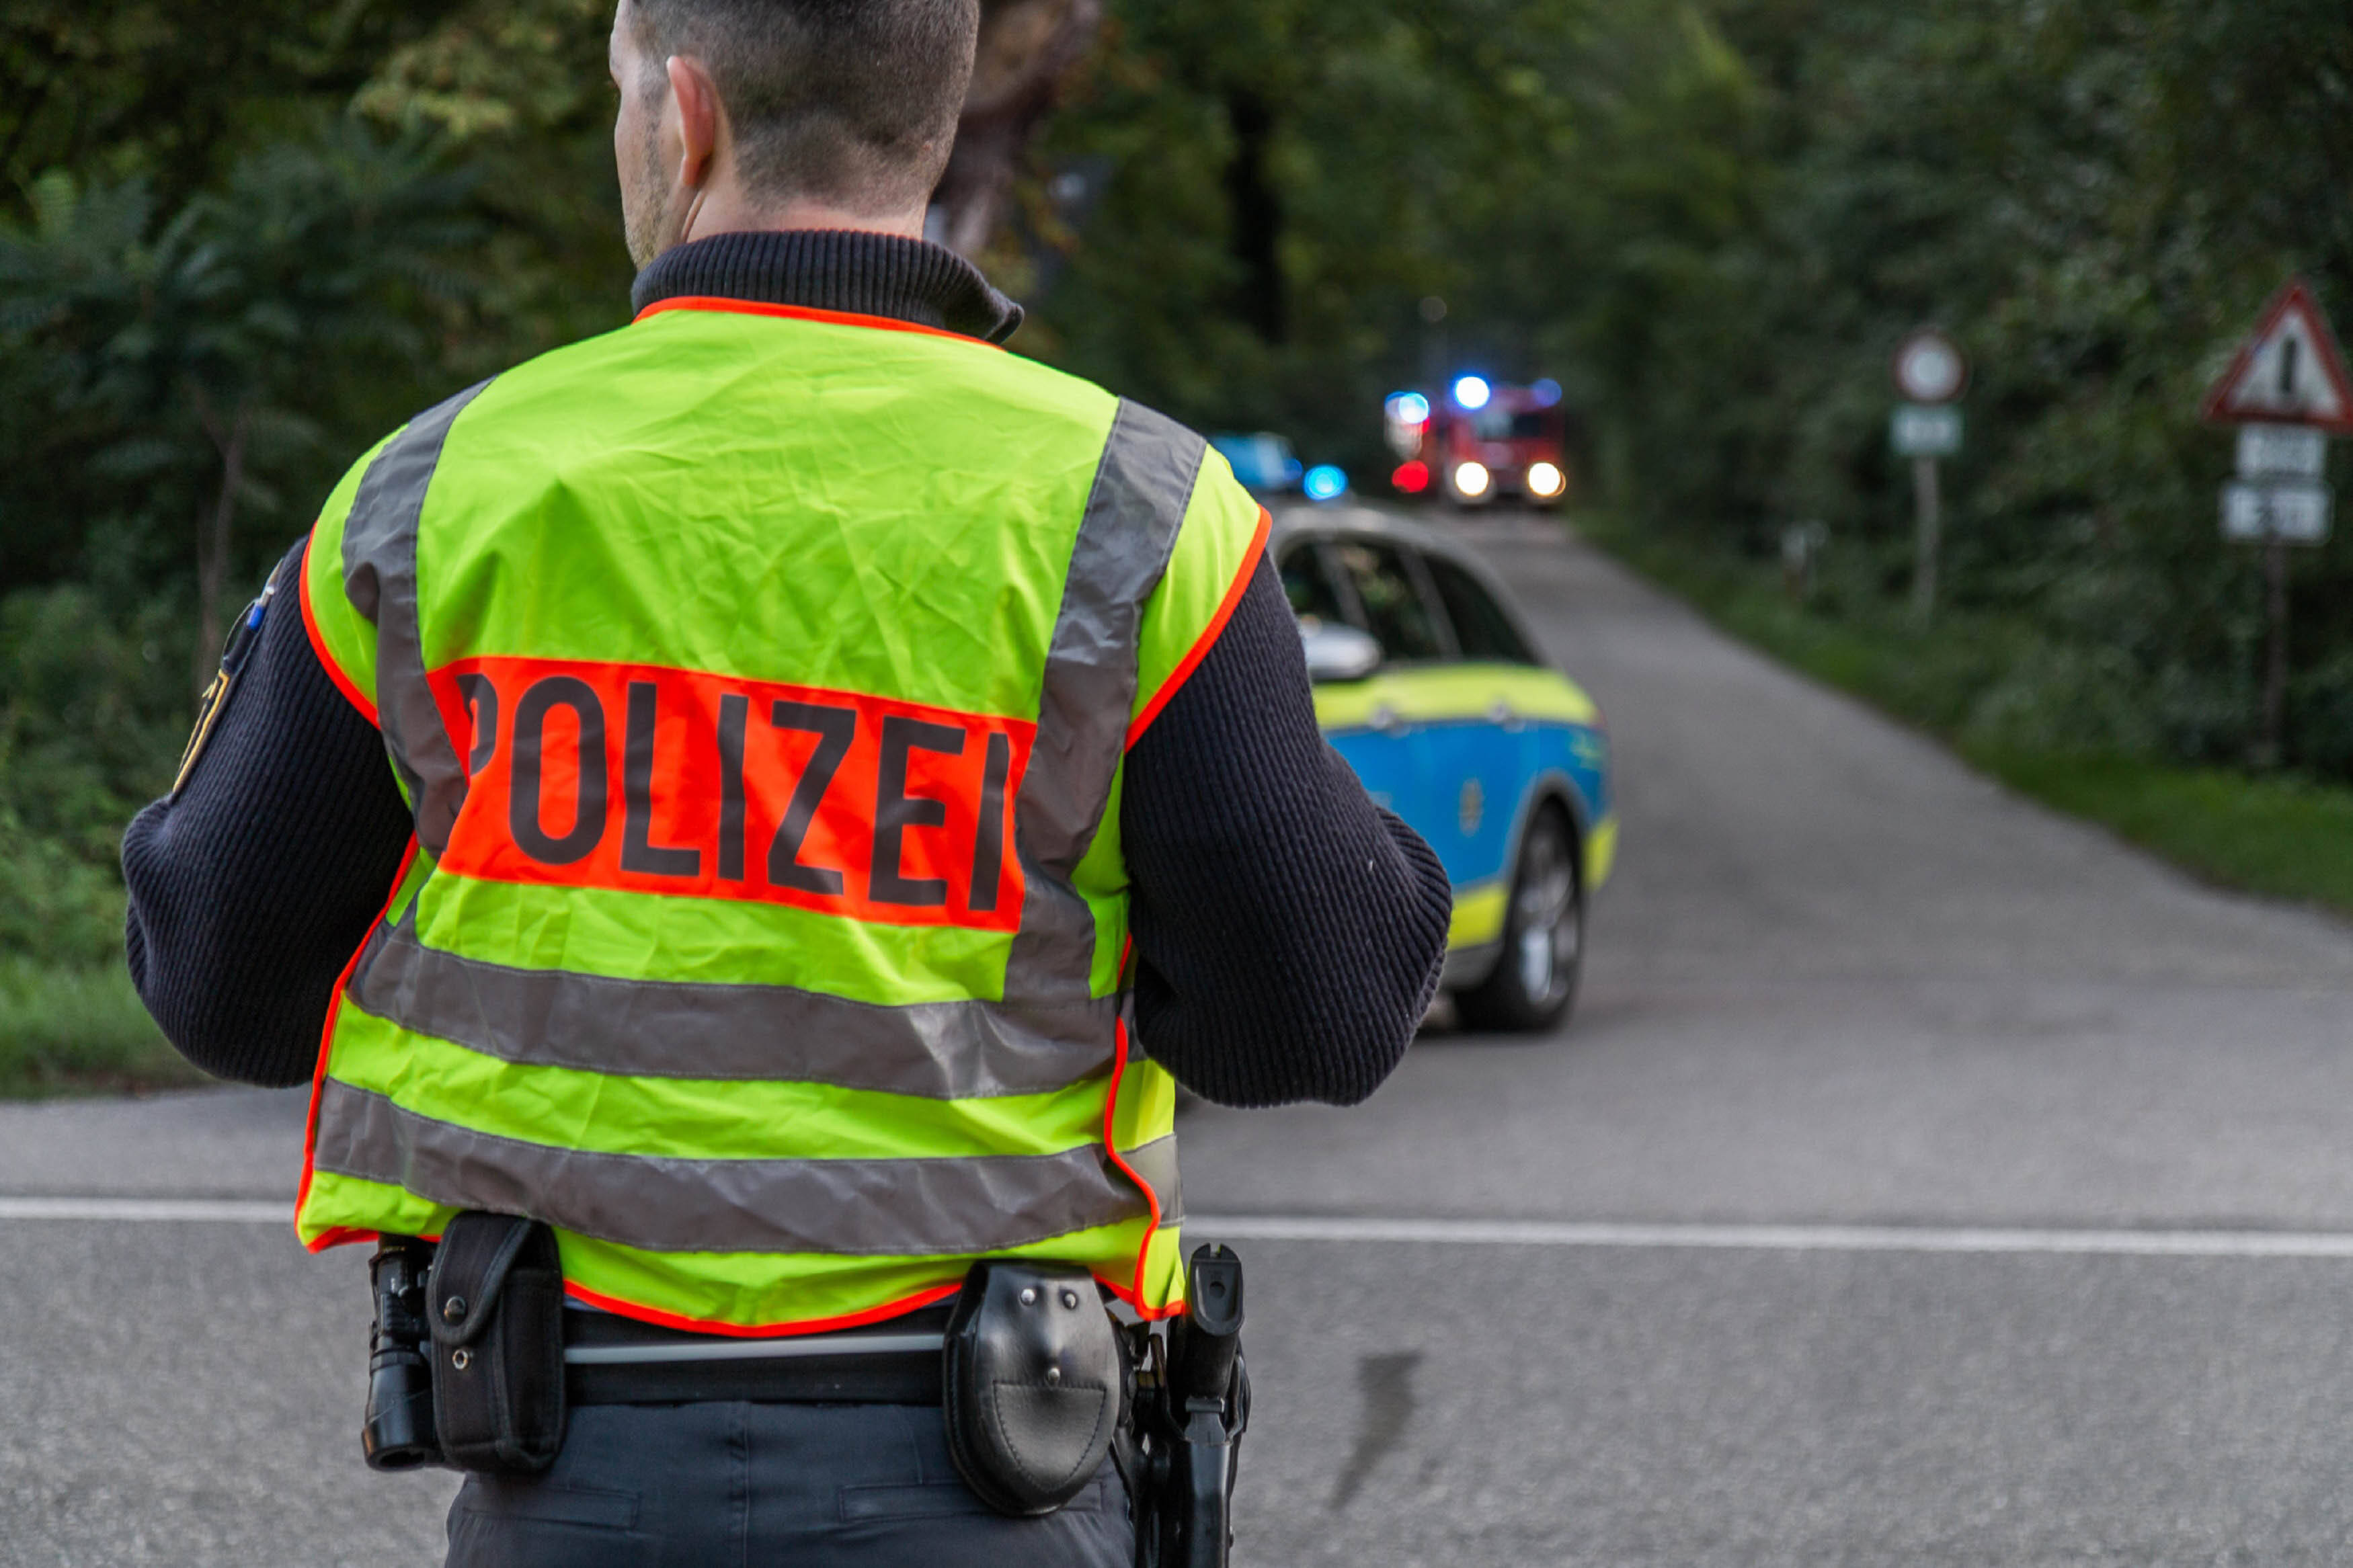 Festnahme in Berlin! Weltweit gesuchter Drogenboss von Polizei in spektakulärer Aktion verhaftet